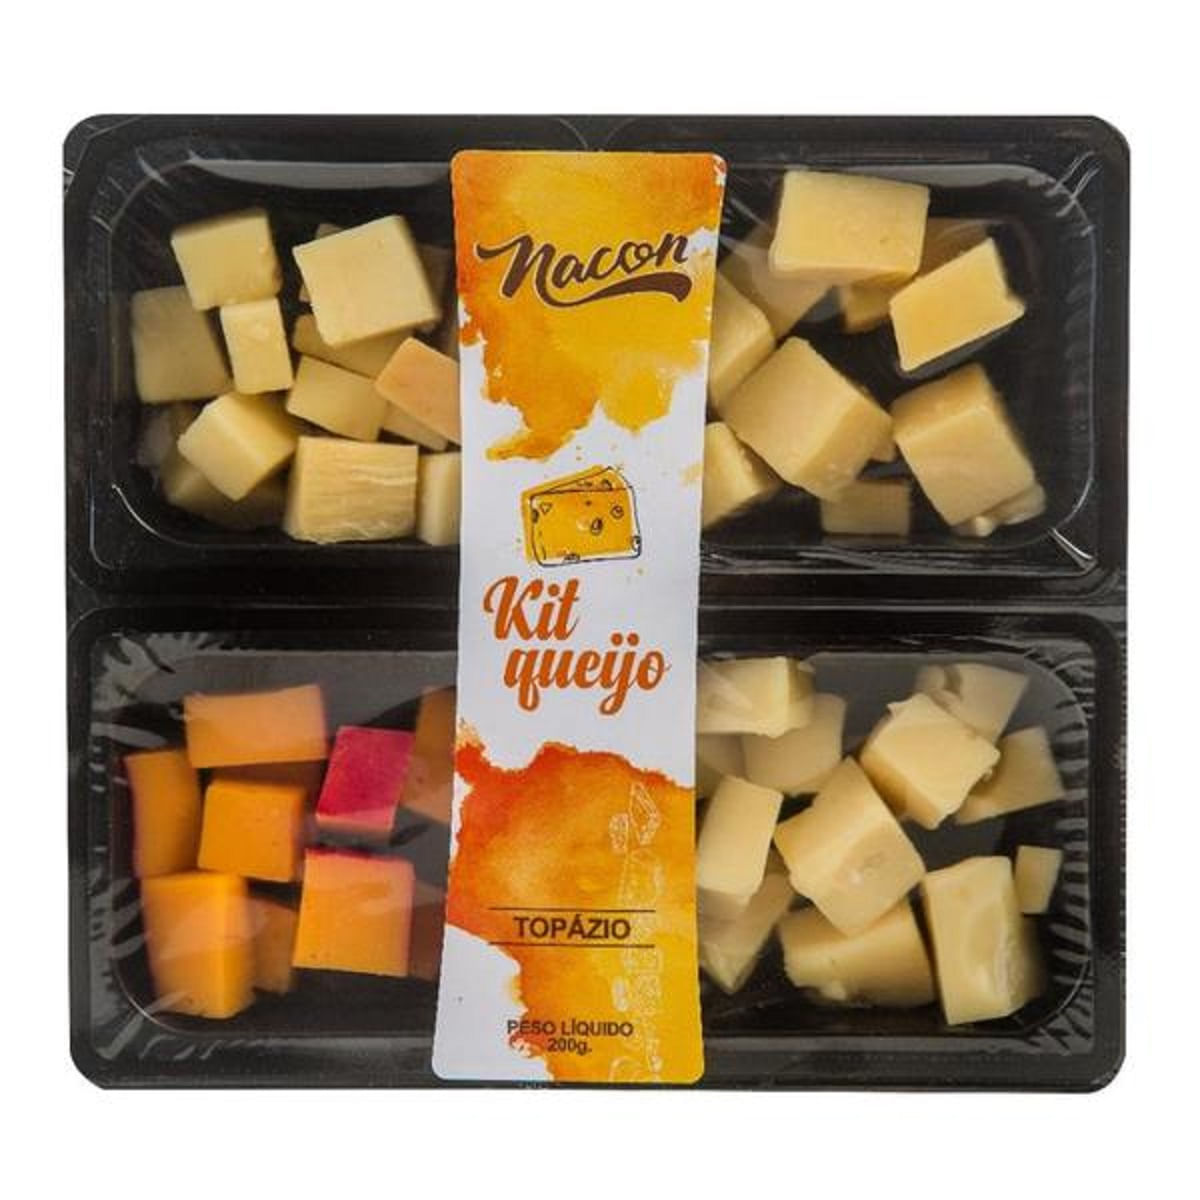 kit-queijo-topazio-nacon-250-g-1.jpg